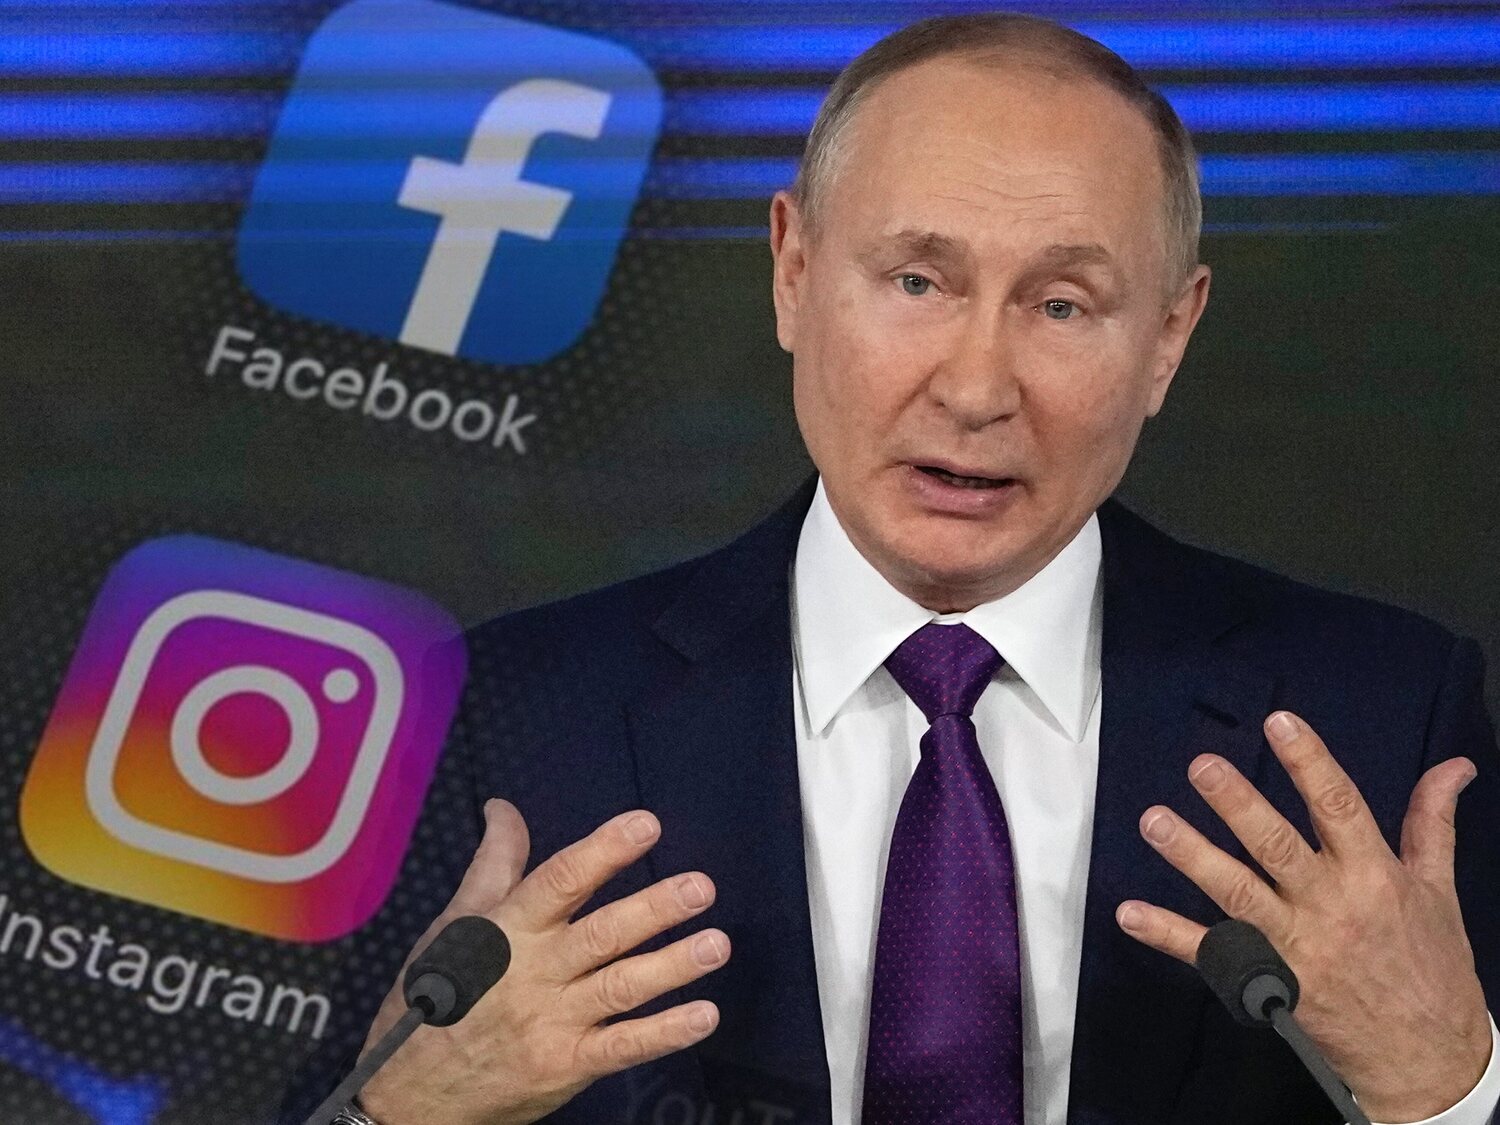 Los mensajes de odio contra Putin, permitidos en Facebook e Instagram